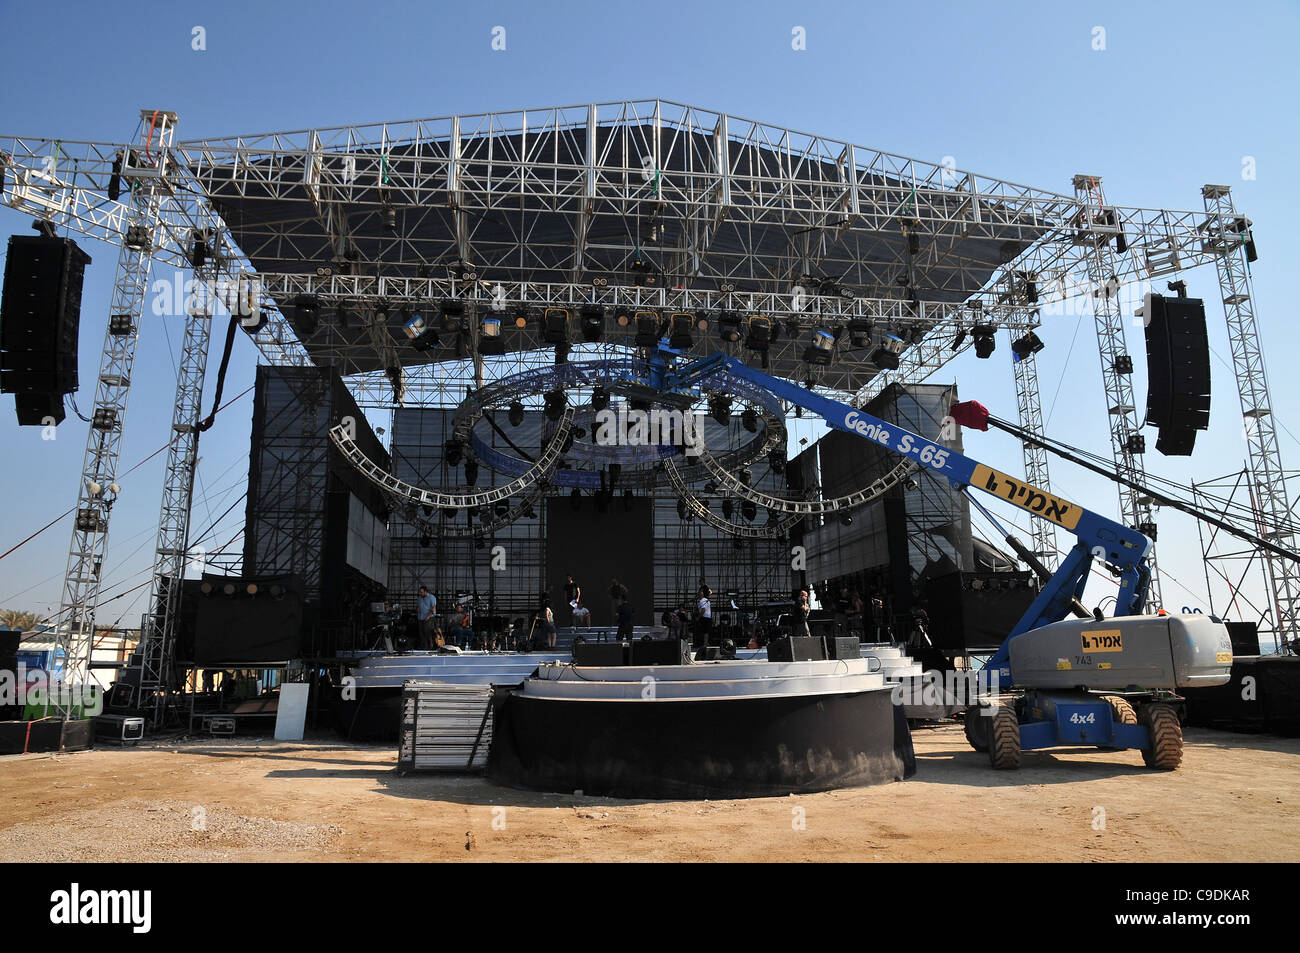 Festival de musique en plein air. La scène principale est en cours de construction photographié à Haïfa, Israël Banque D'Images